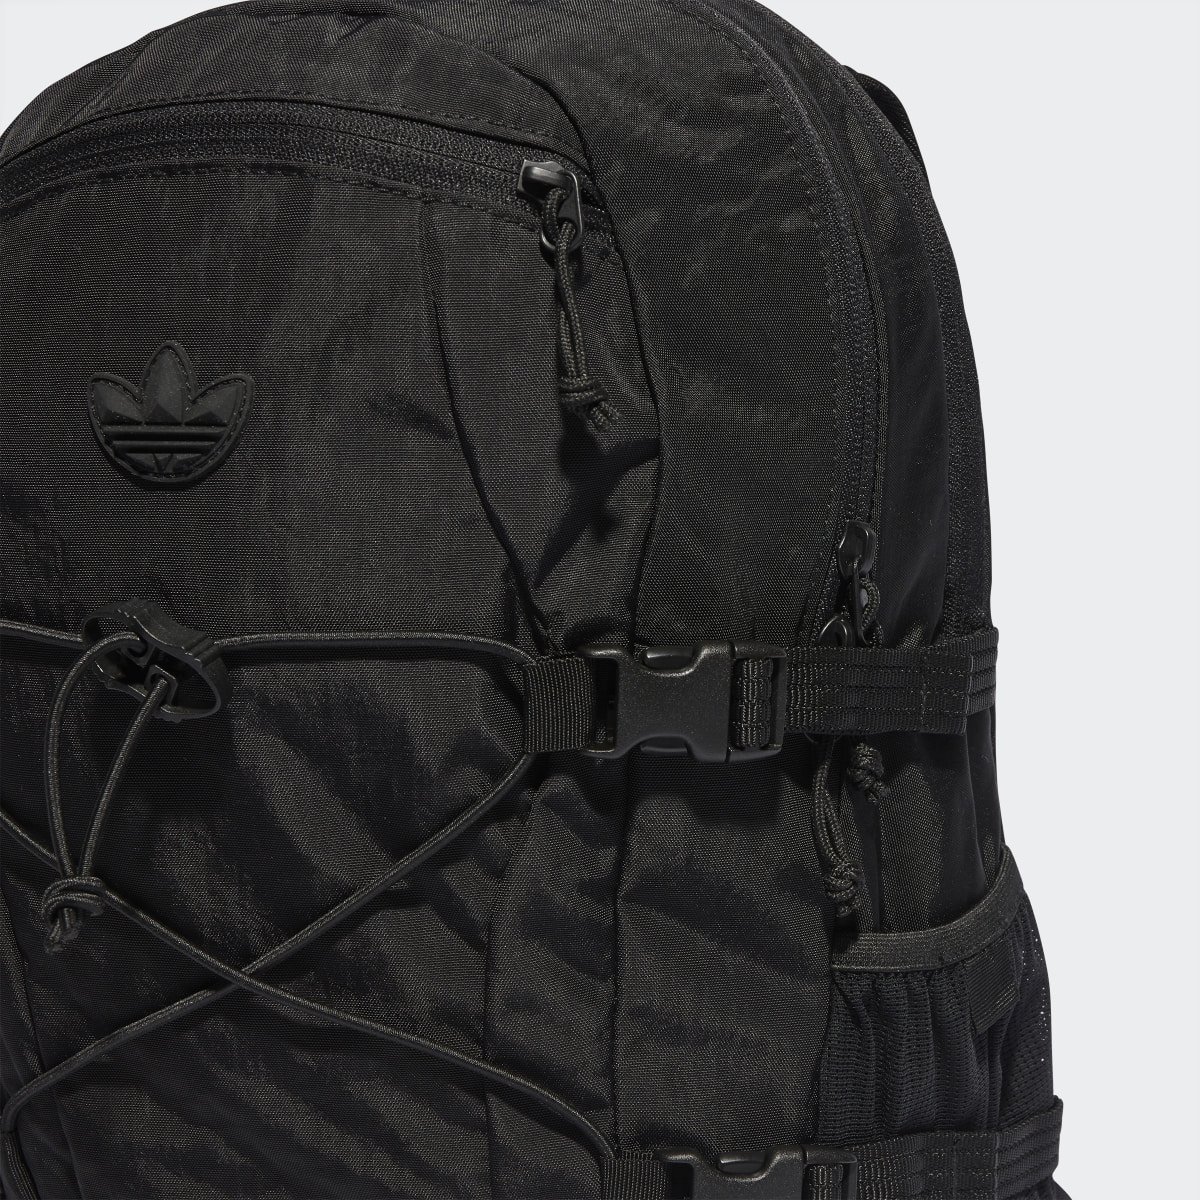 Adidas Adventure Backpack. 6